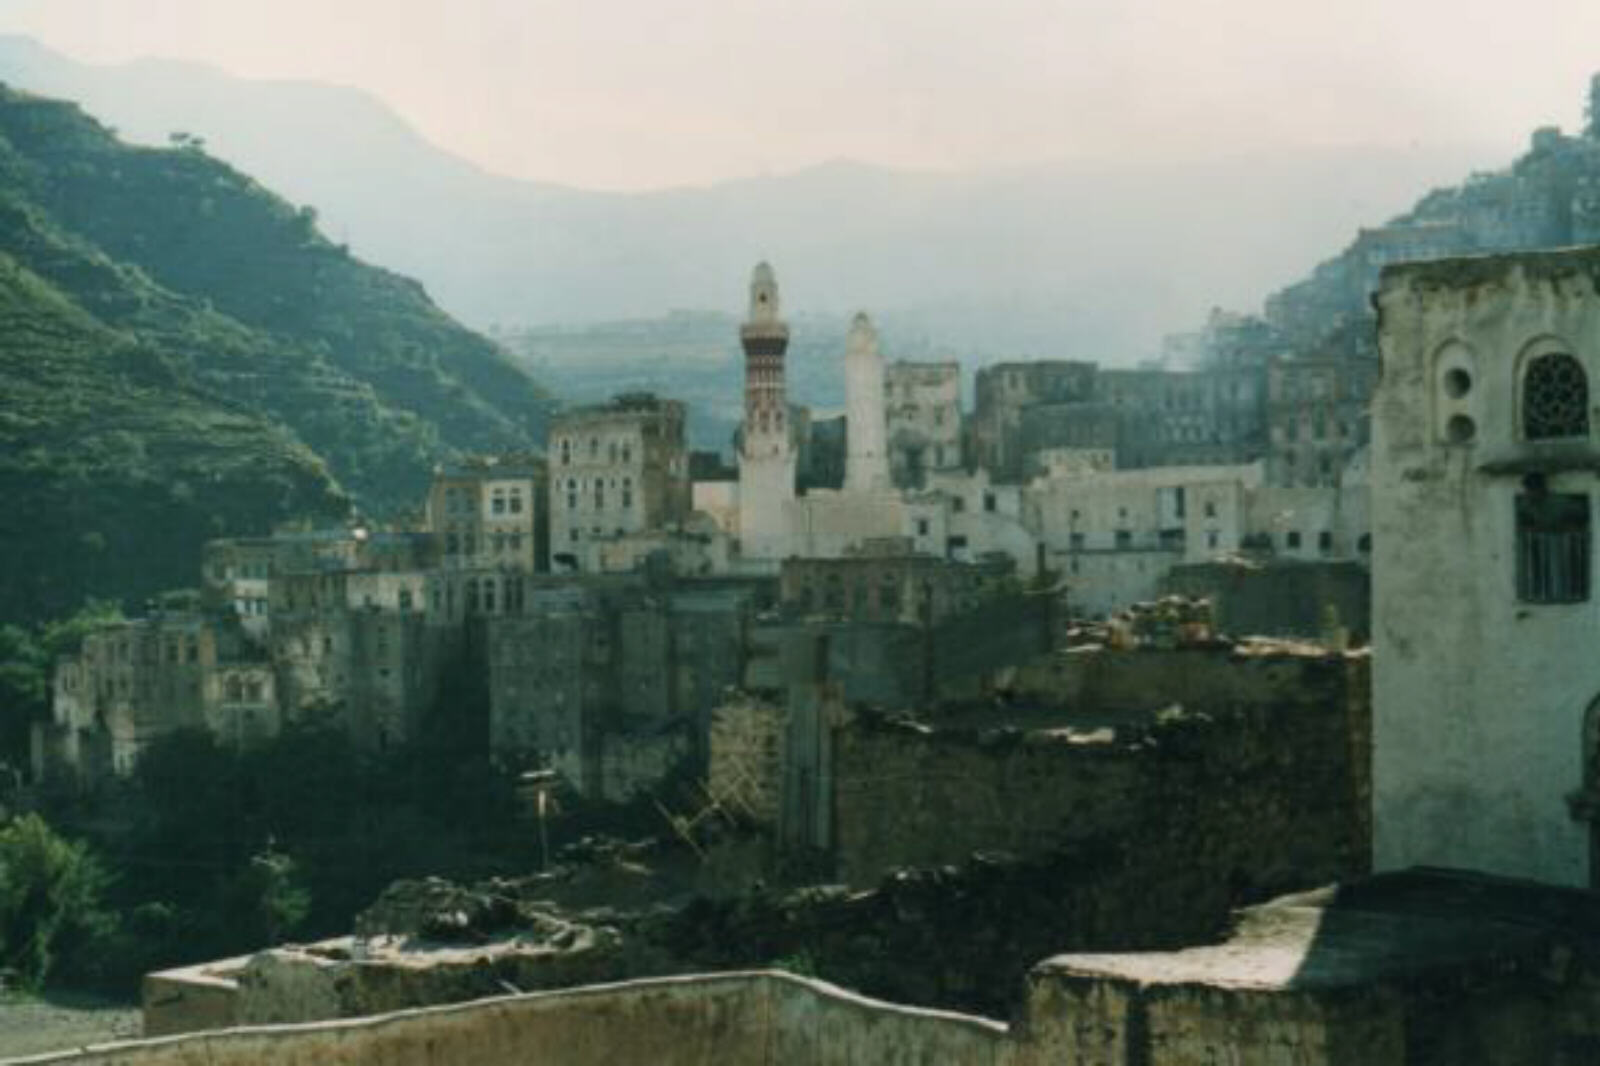 Queen Arwa mosque in Jibla, Yemen